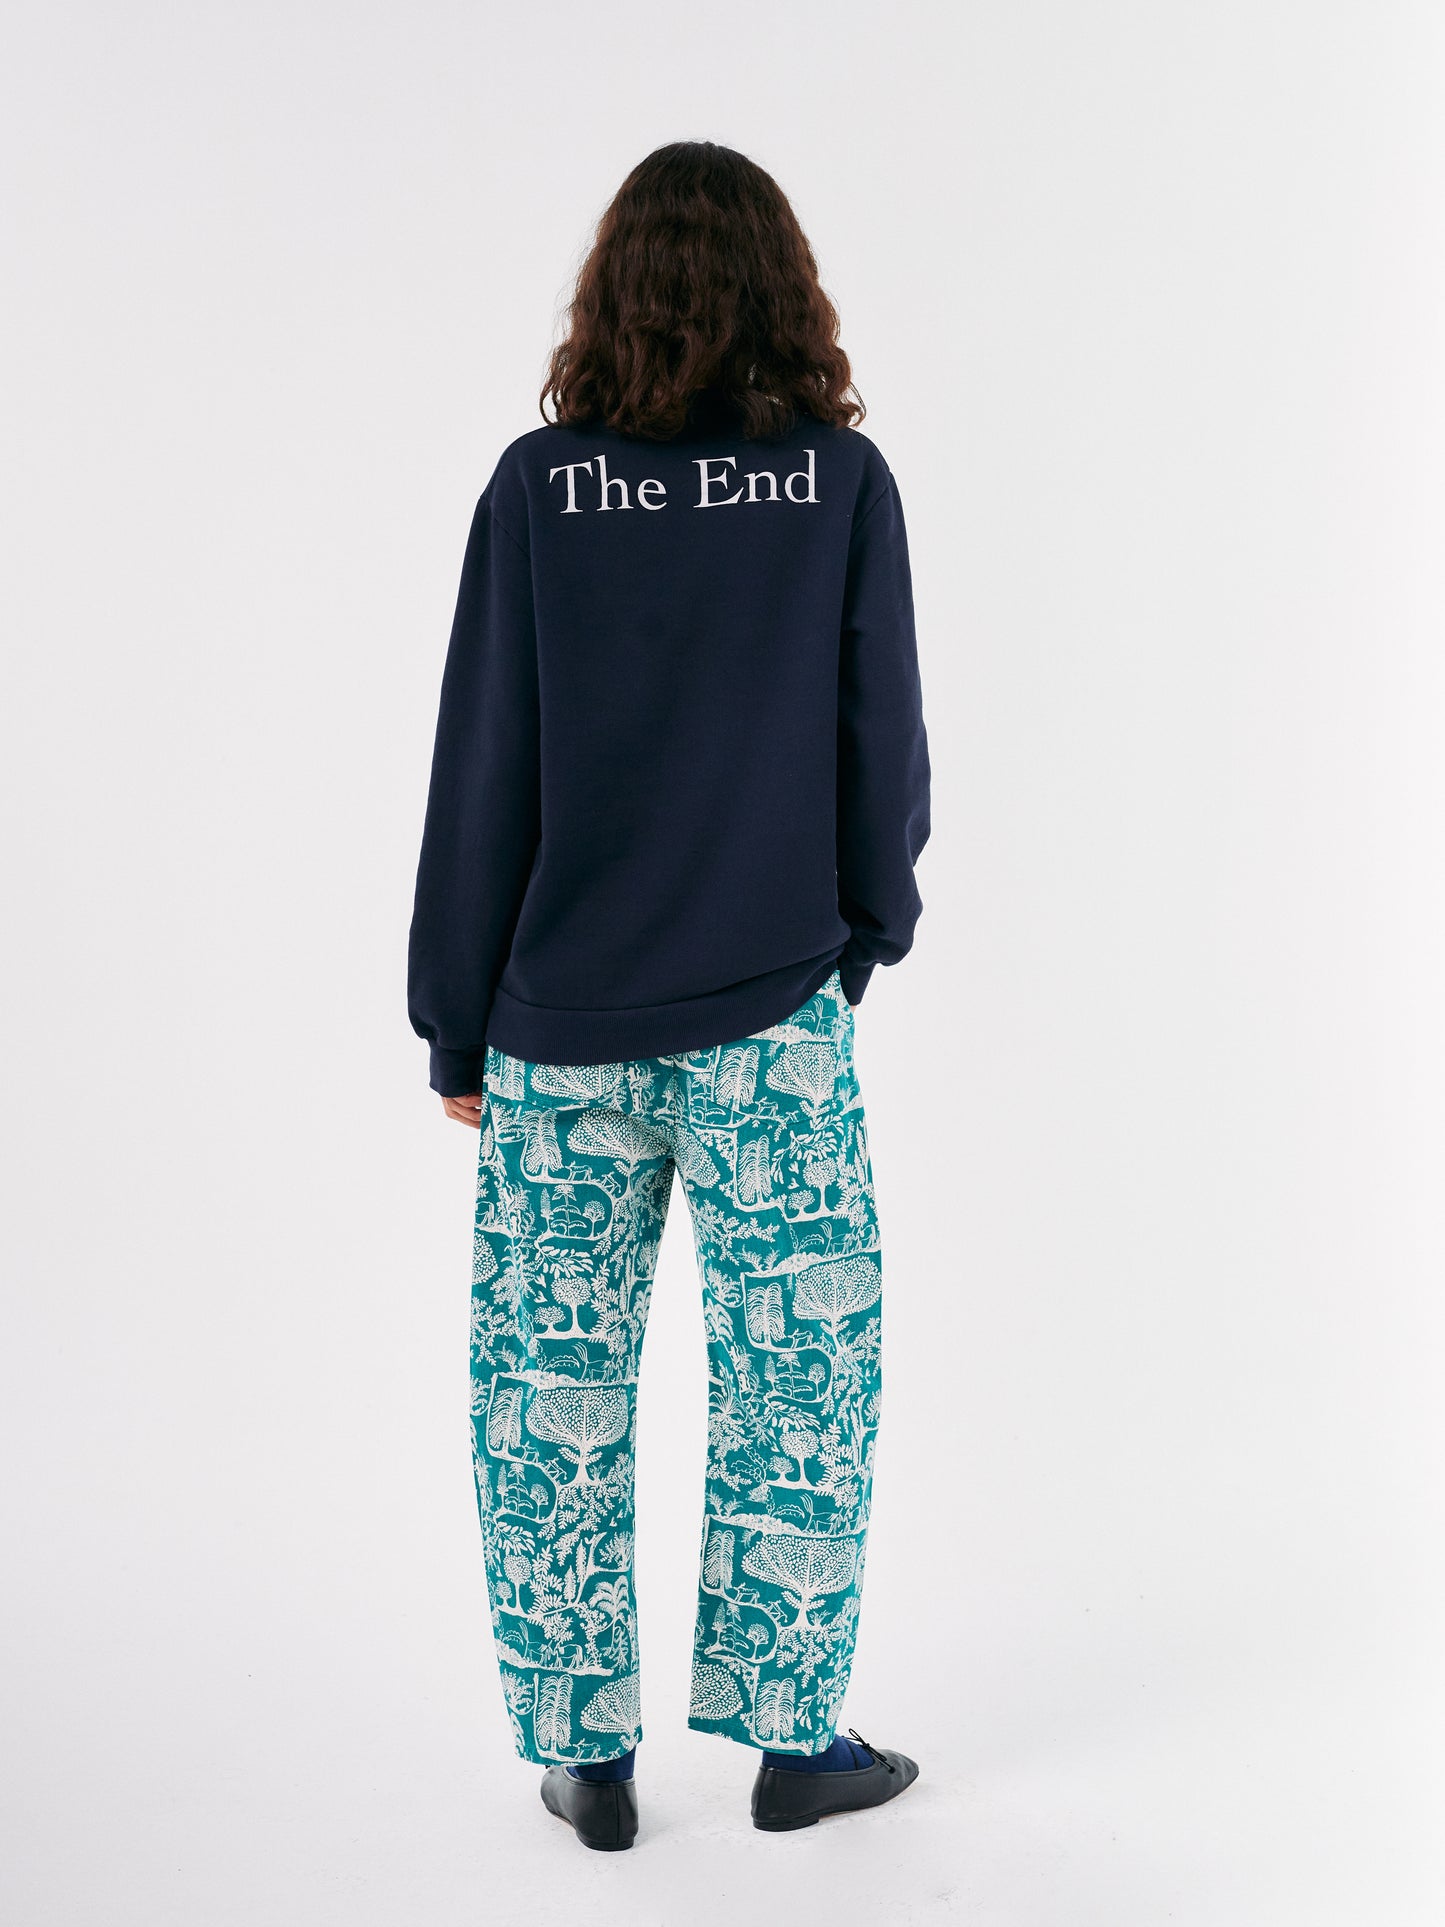 The End unisex sweatshirt